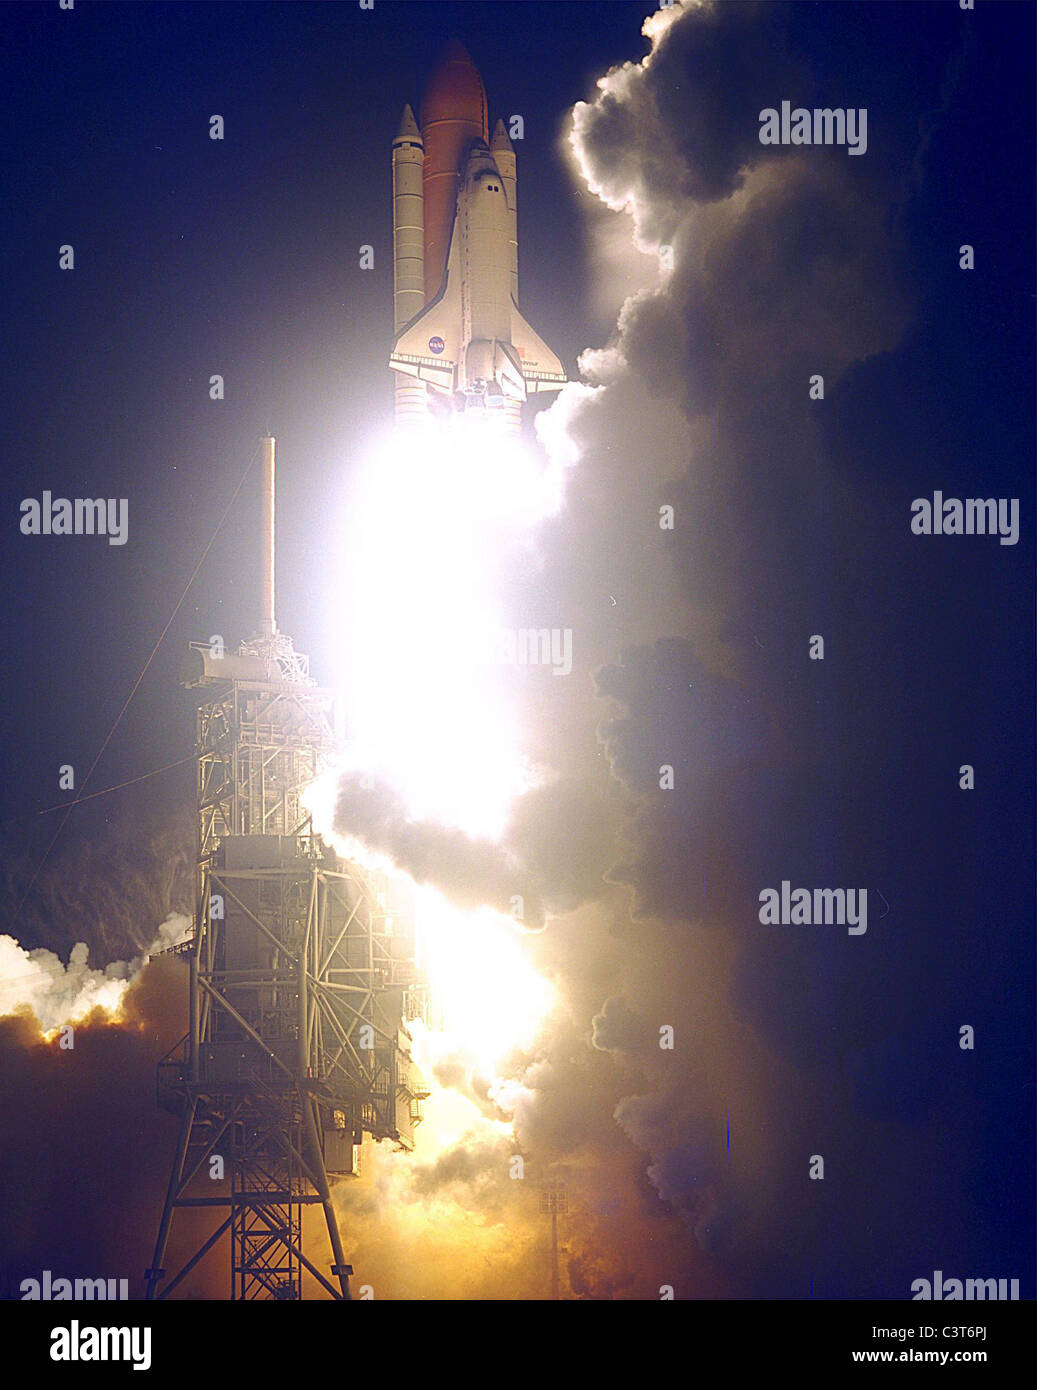 Adoperano svetta lo Space Shuttle Endeavour illumina il cielo notturno come si imbarca sulla prima missione statunitense, STS-88, dedicate al montaggio della stazione spaziale internazionale. Il decollo su dec. 4 dalla piazzola di lancio 39a era al 3:35:34 a.m. est. durante i quasi 12 giorni di missione, i sei membri dell'equipaggio si accoppiano nello spazio i primi due elementi della stazione spaziale internazionale già-orbiting zarya modulo di comando con l'unità modulo di collegamento portati da sforzo. membri di equipaggio sono comandante Robert d. Foto Stock